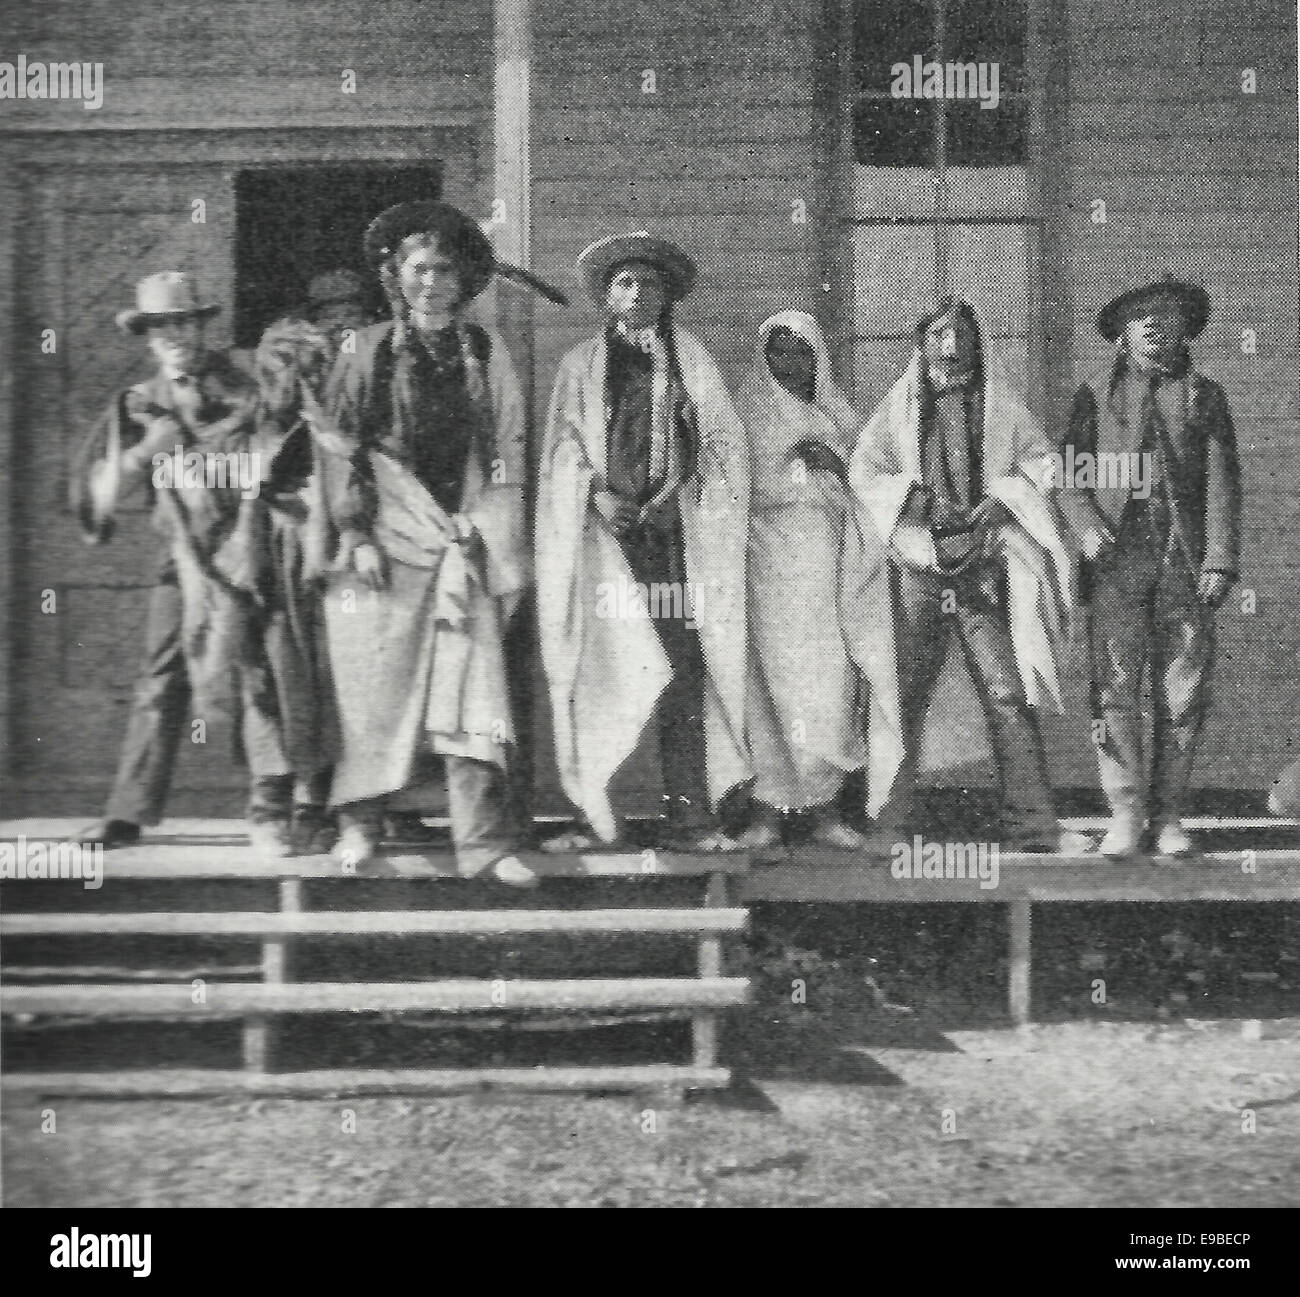 Gruppe von Indianern bei der Post-Traders - Eröffnung der Ute-Reservierung im südlichen Colorado, Siedlung, 1899 Stockfoto